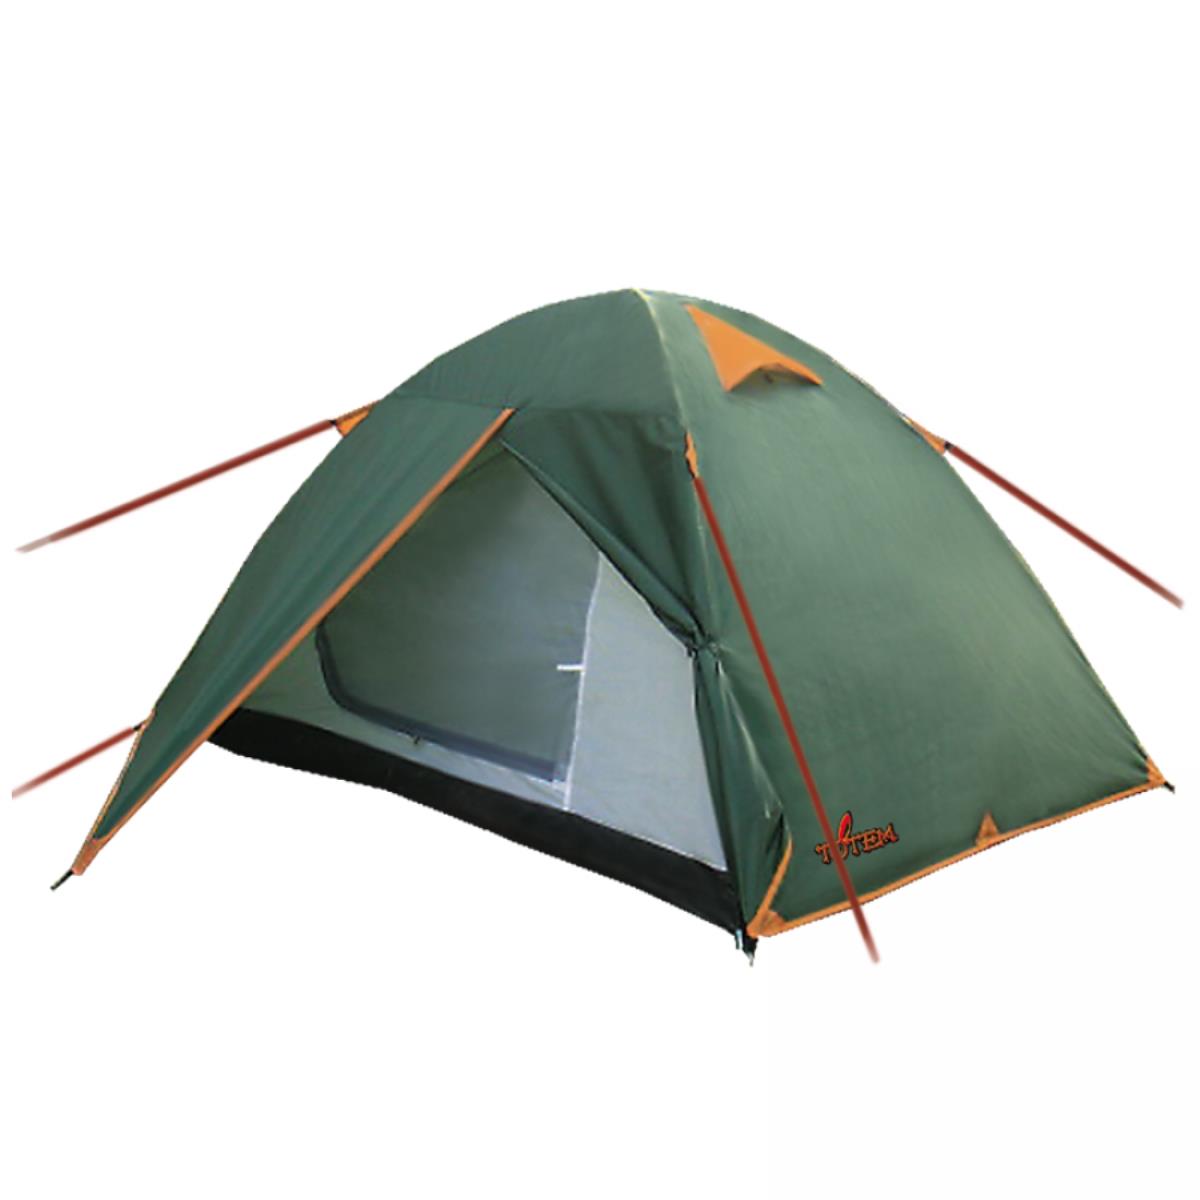 Палатка Tepee 2 V2 зеленый (TTT-020) Totem палатка bluebird 2 v2 зеленый ttt 015 totem